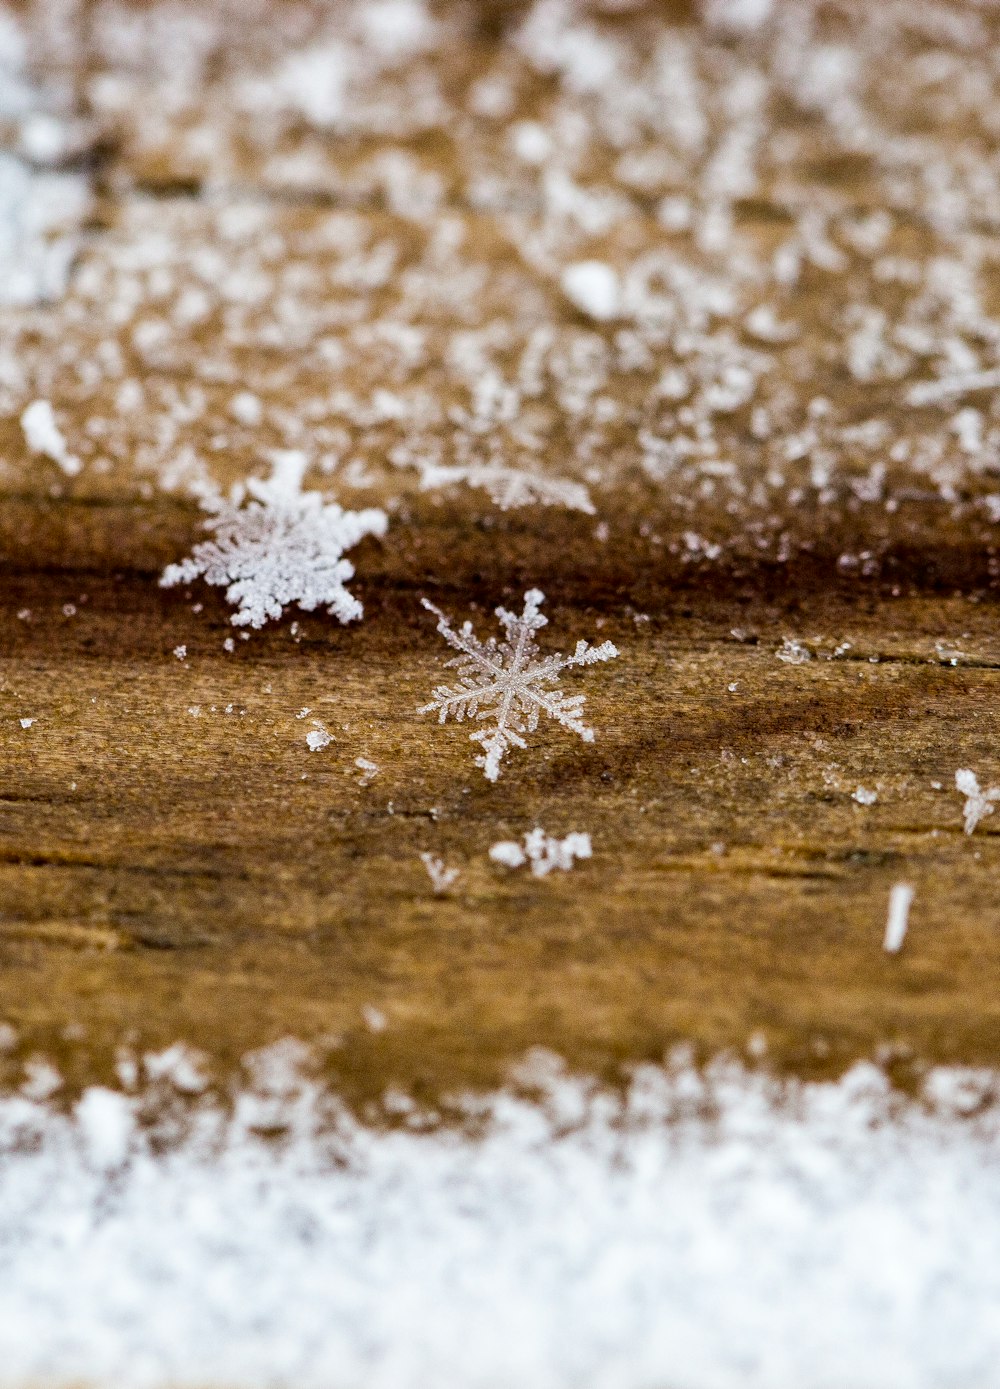 snowflakes on ground